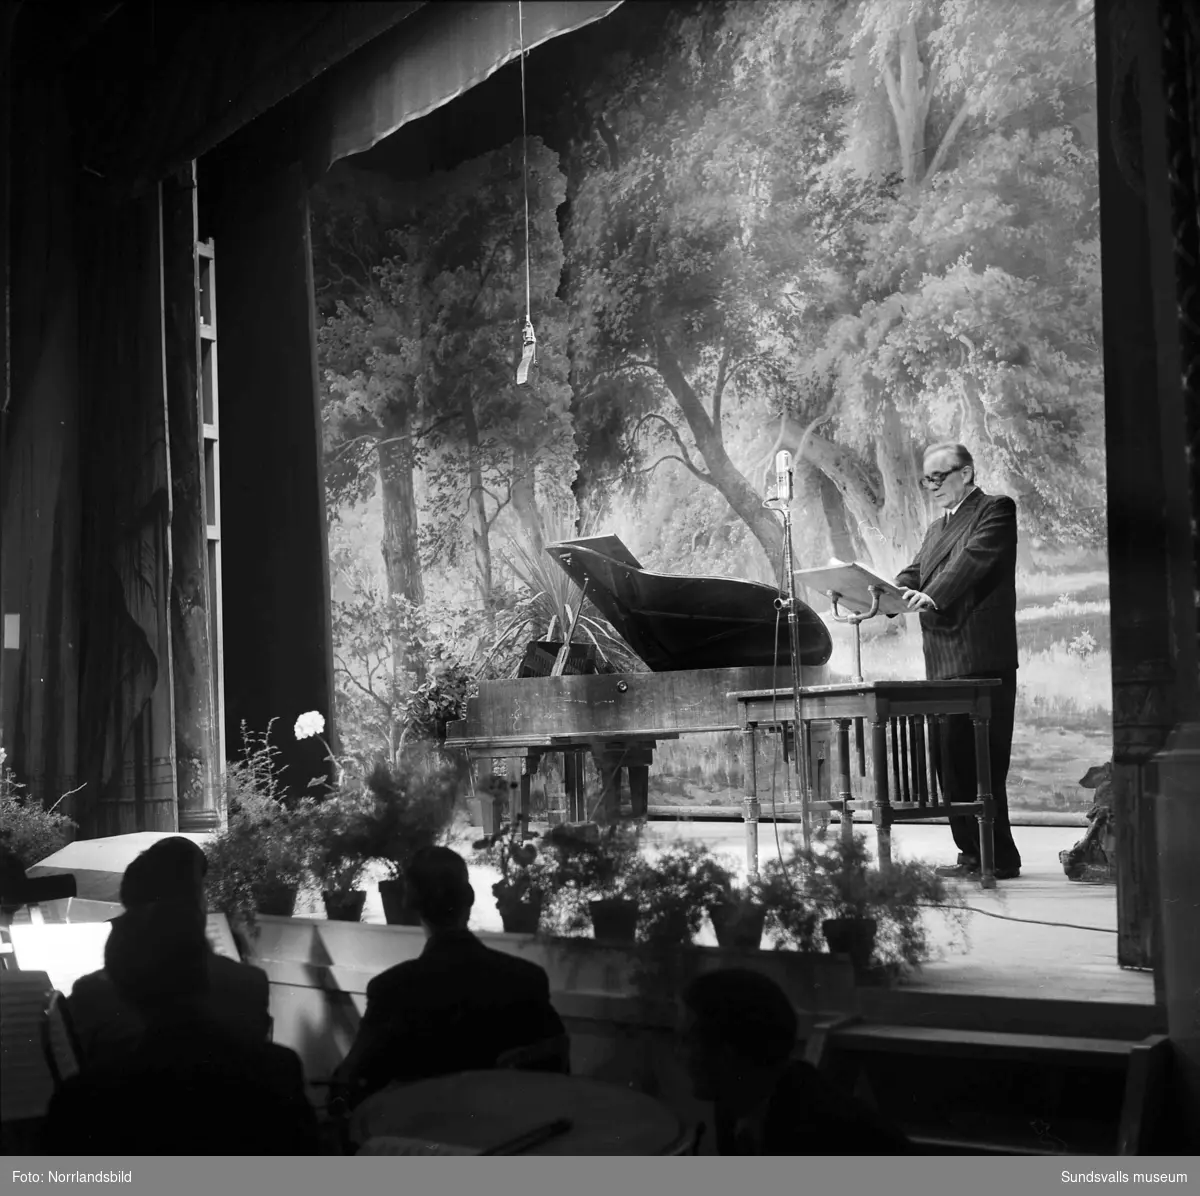 Soare på Sundsvalls teater i samband med Norrlandsförbundets årsmöte 1953.